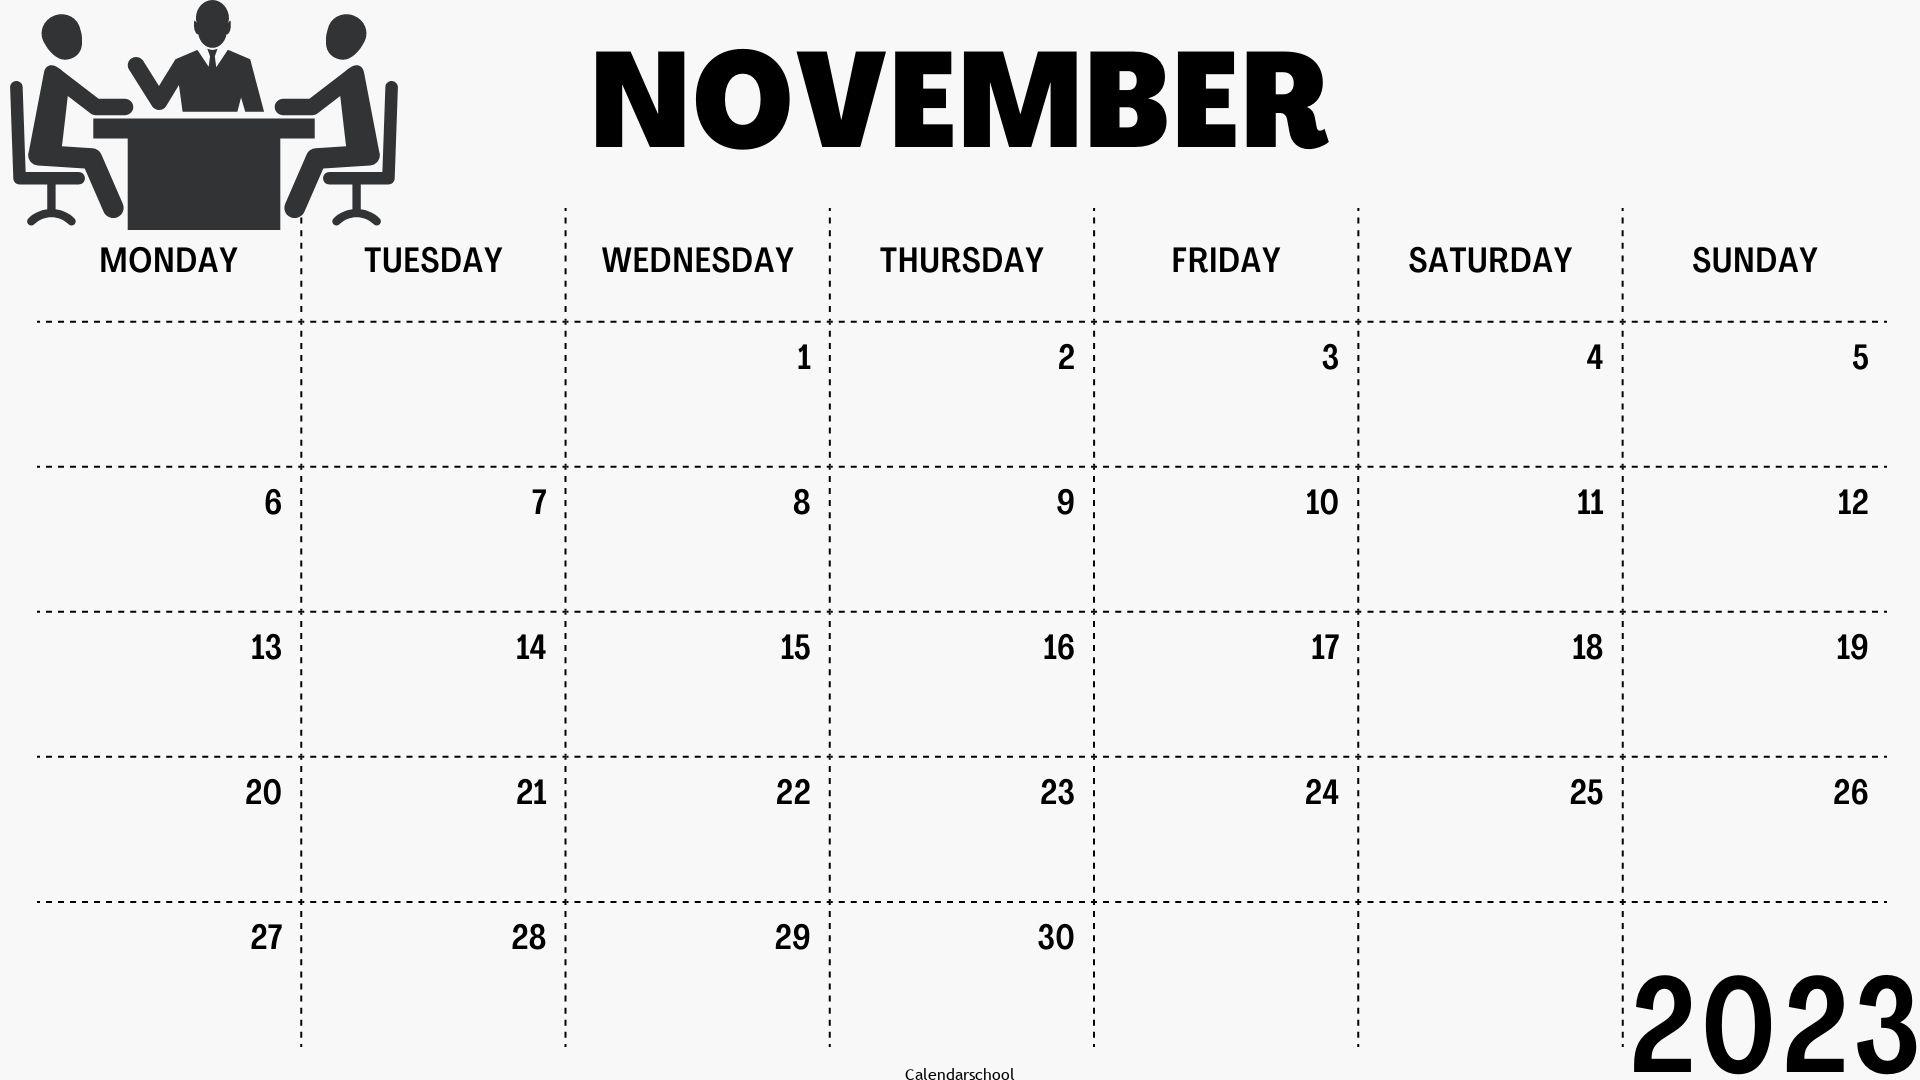 Calendar November 2023 With Notes